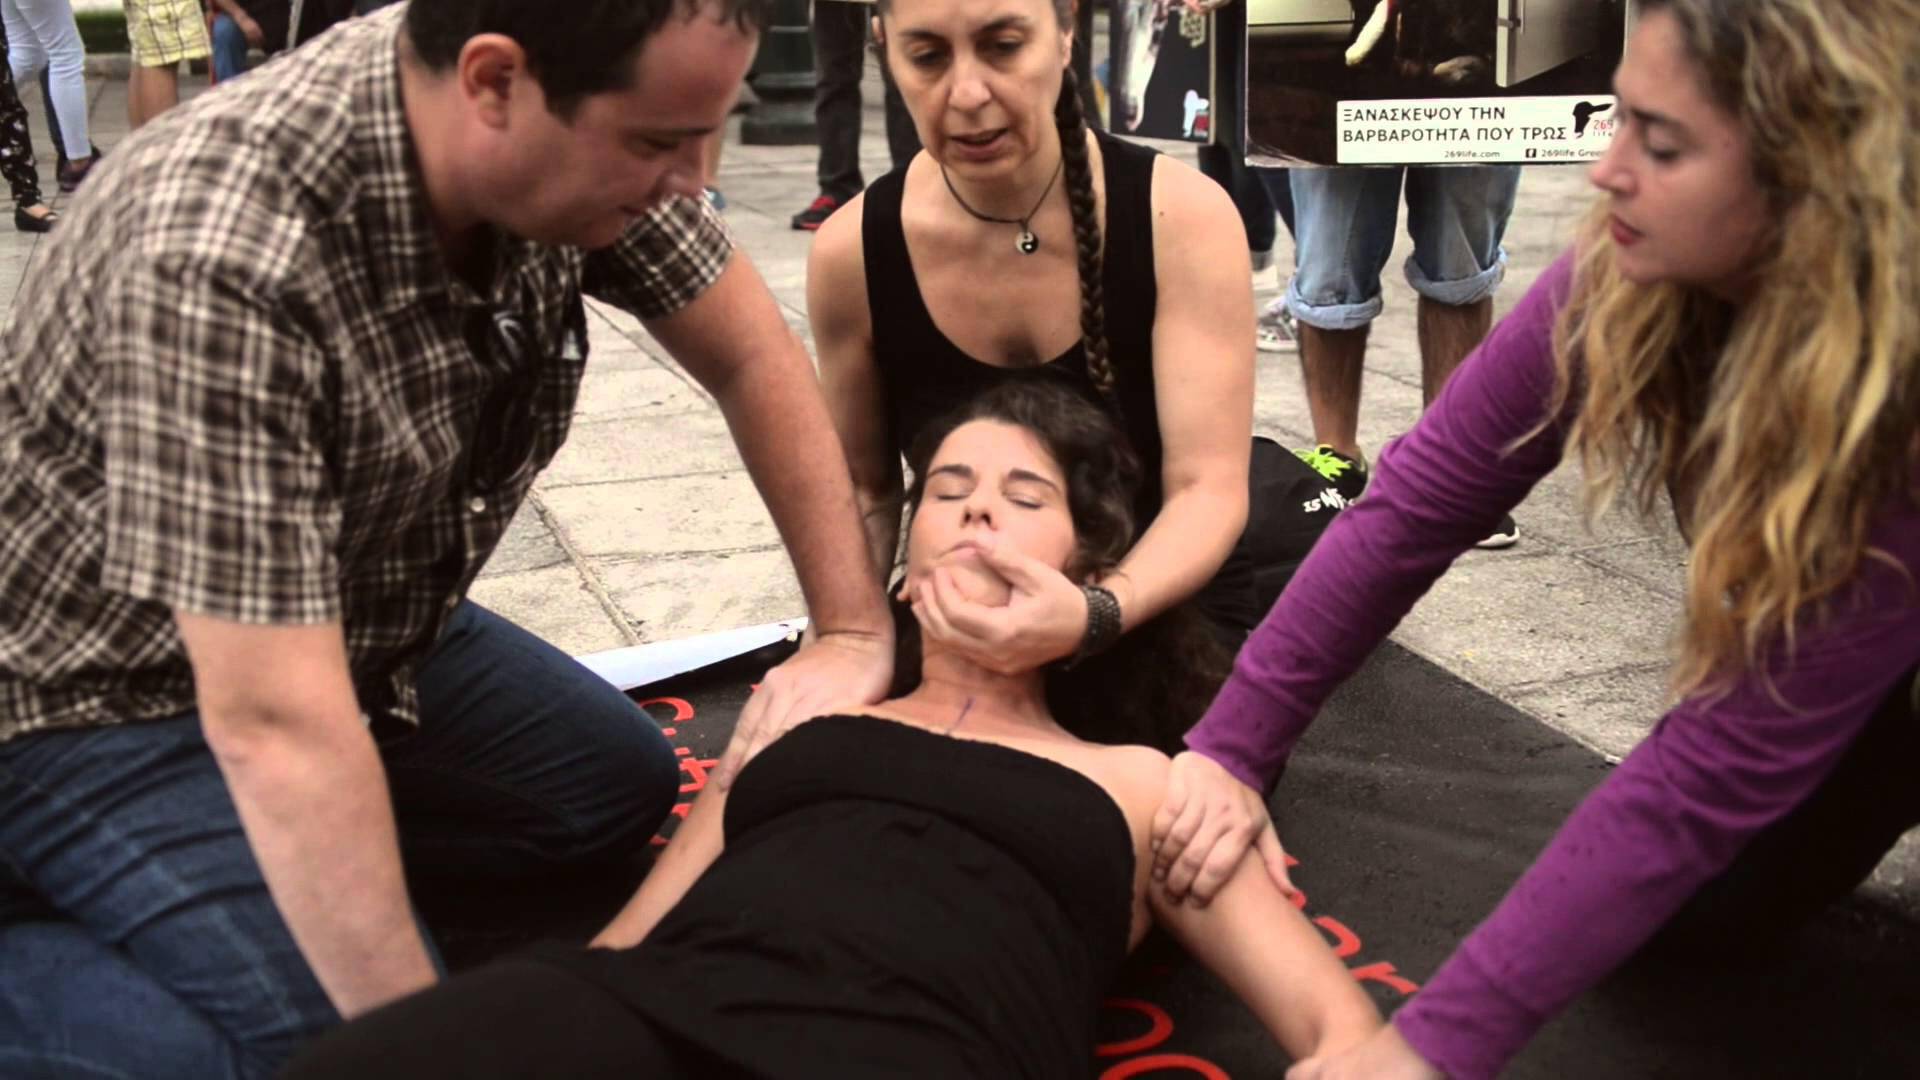 Φιλόζωοι ακτιβιστές μαρκάρουν το σώμα τους στην πλατεία Συντάγματος